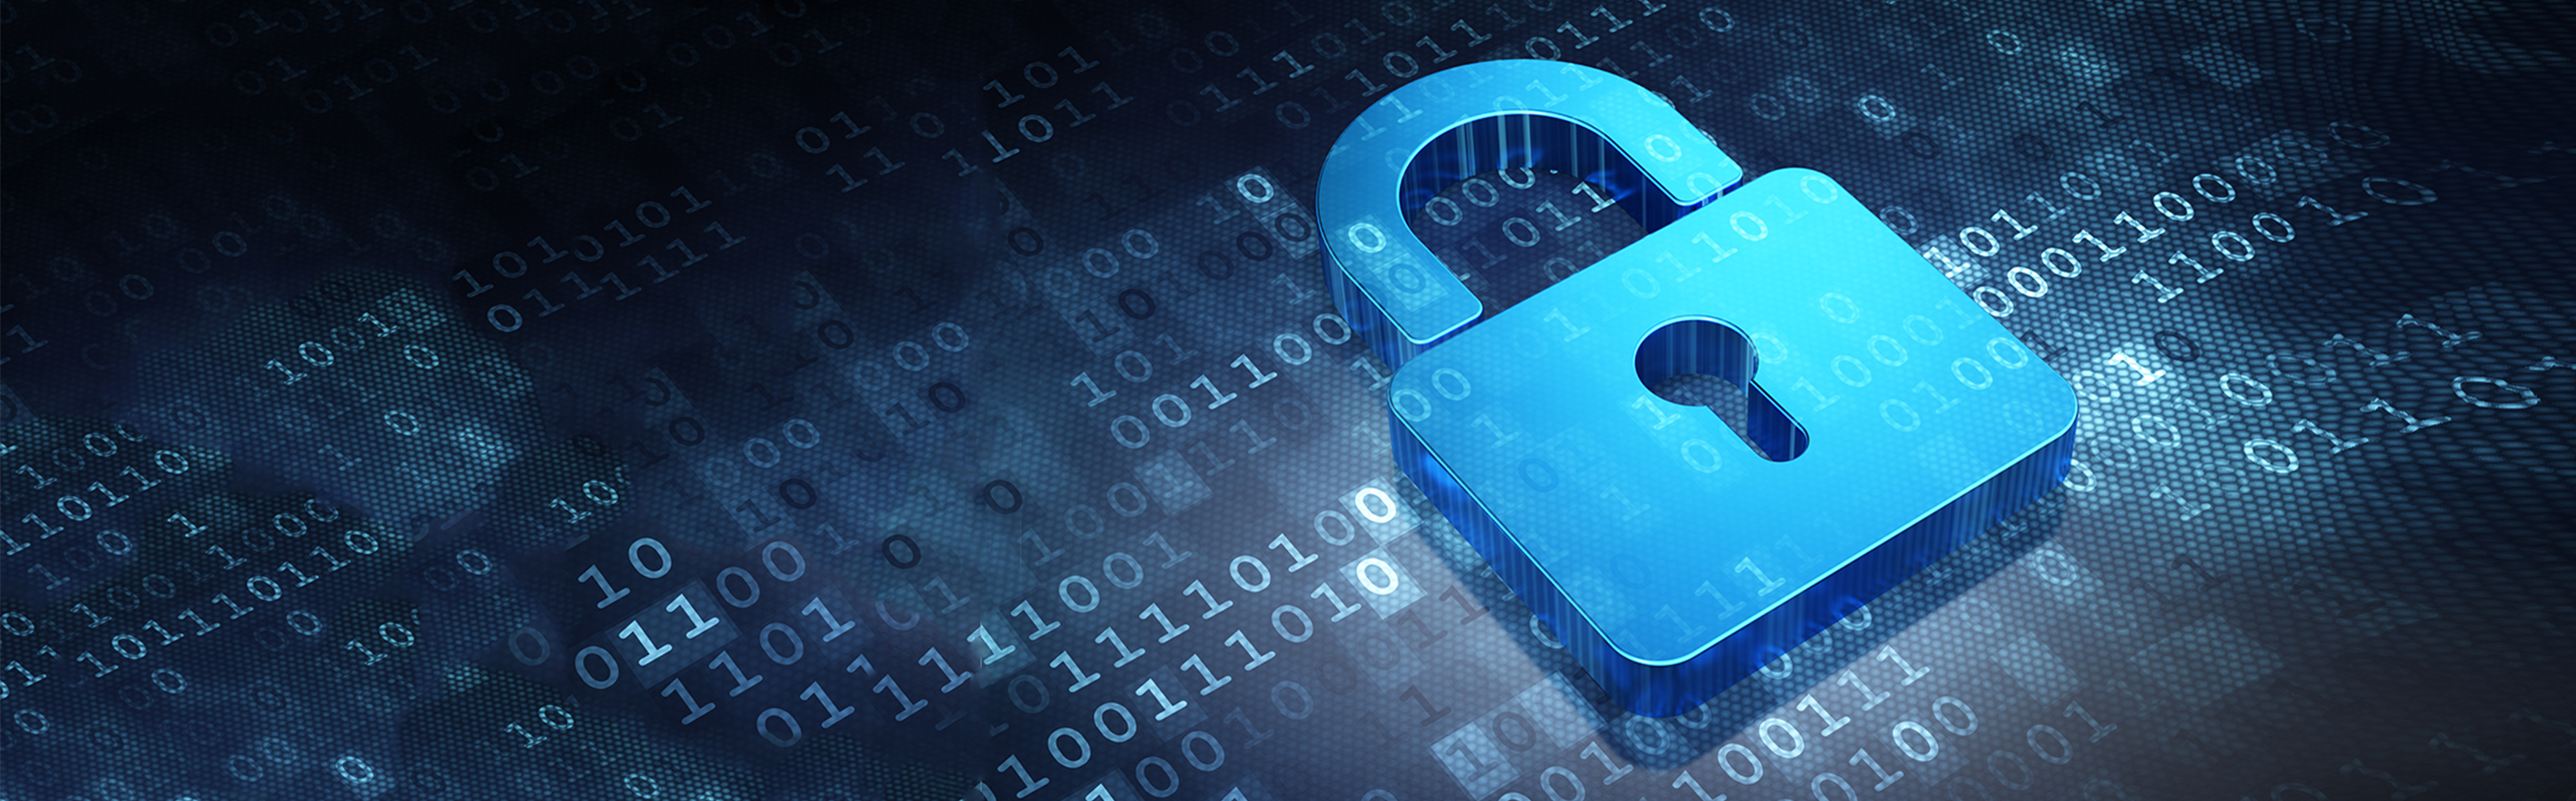 Datensicherheit Security Sicherheit